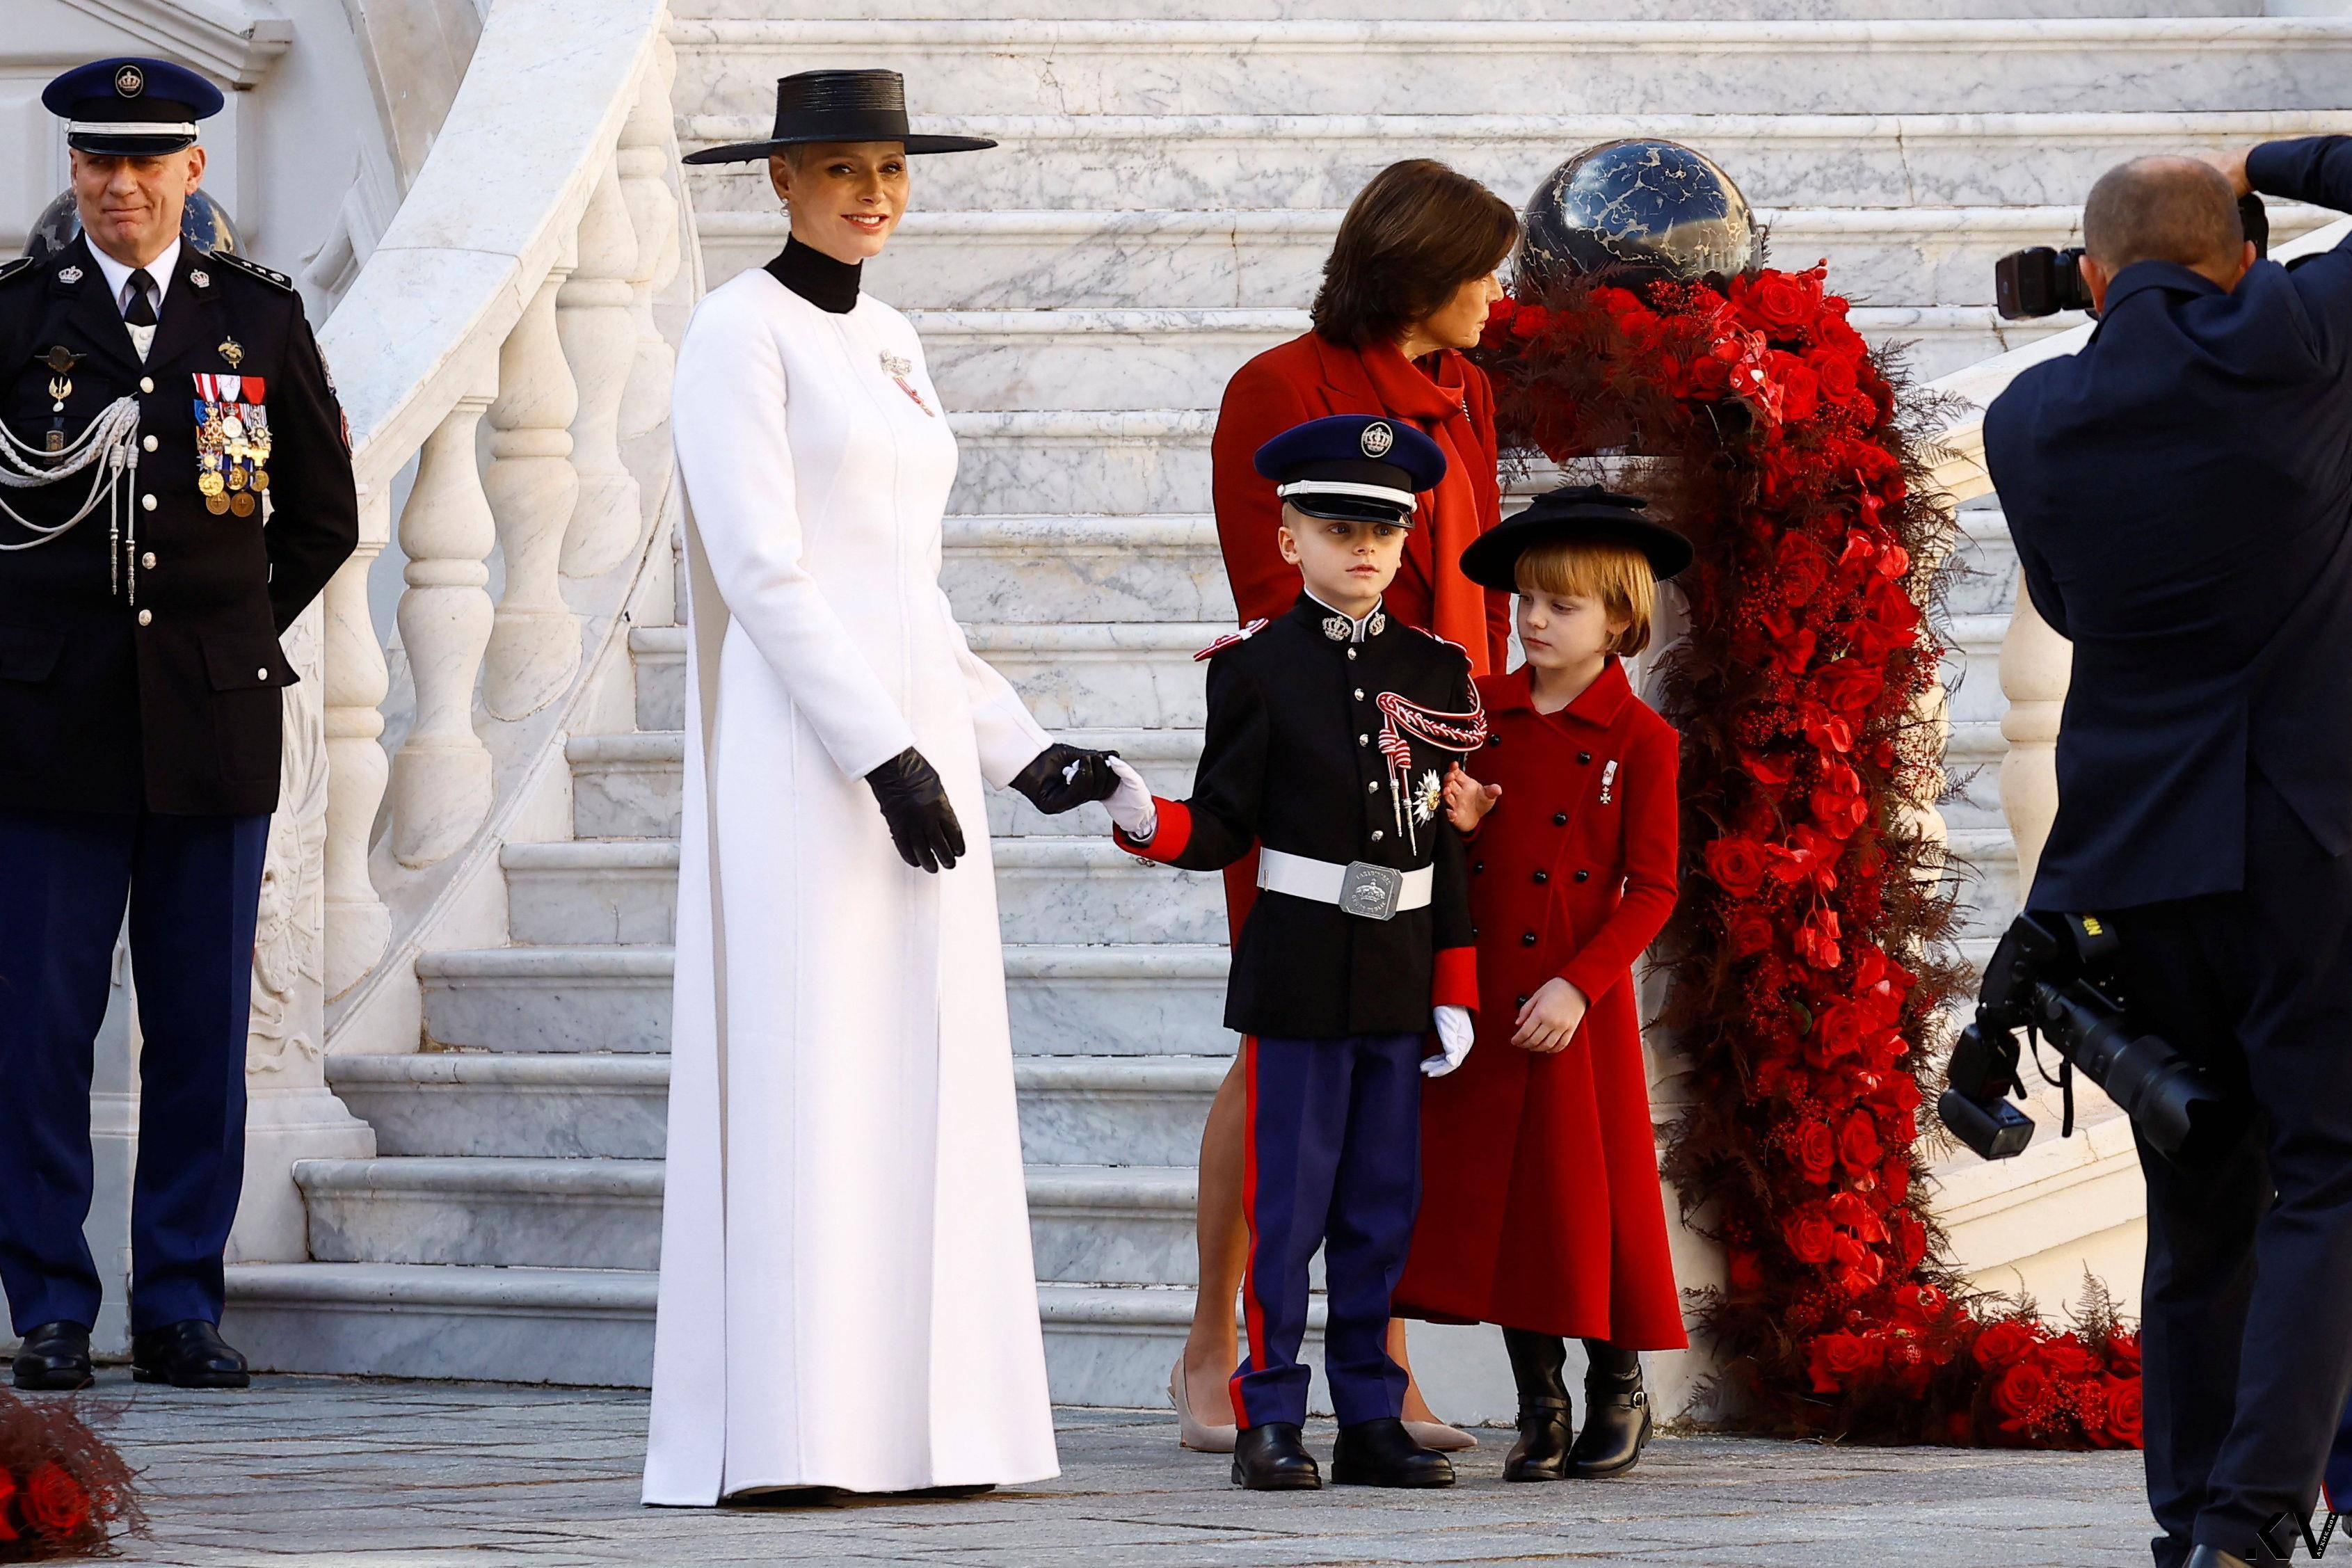 摩纳哥王室把香奈儿当制服穿　“最美王子妃”Dior红装突围 奢侈品牌 图1张